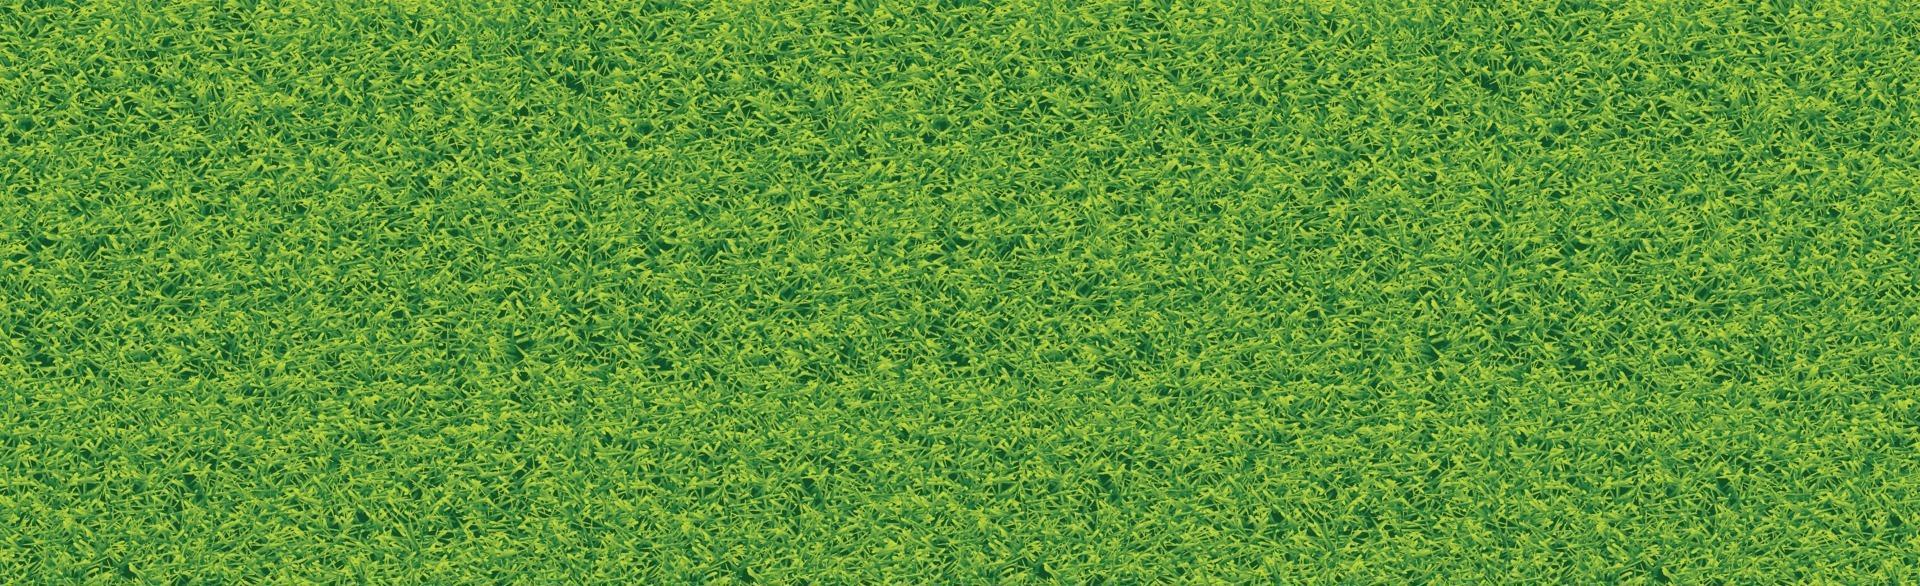 realistisch klassiek voetbalveld met tweekleurige groene coating vector